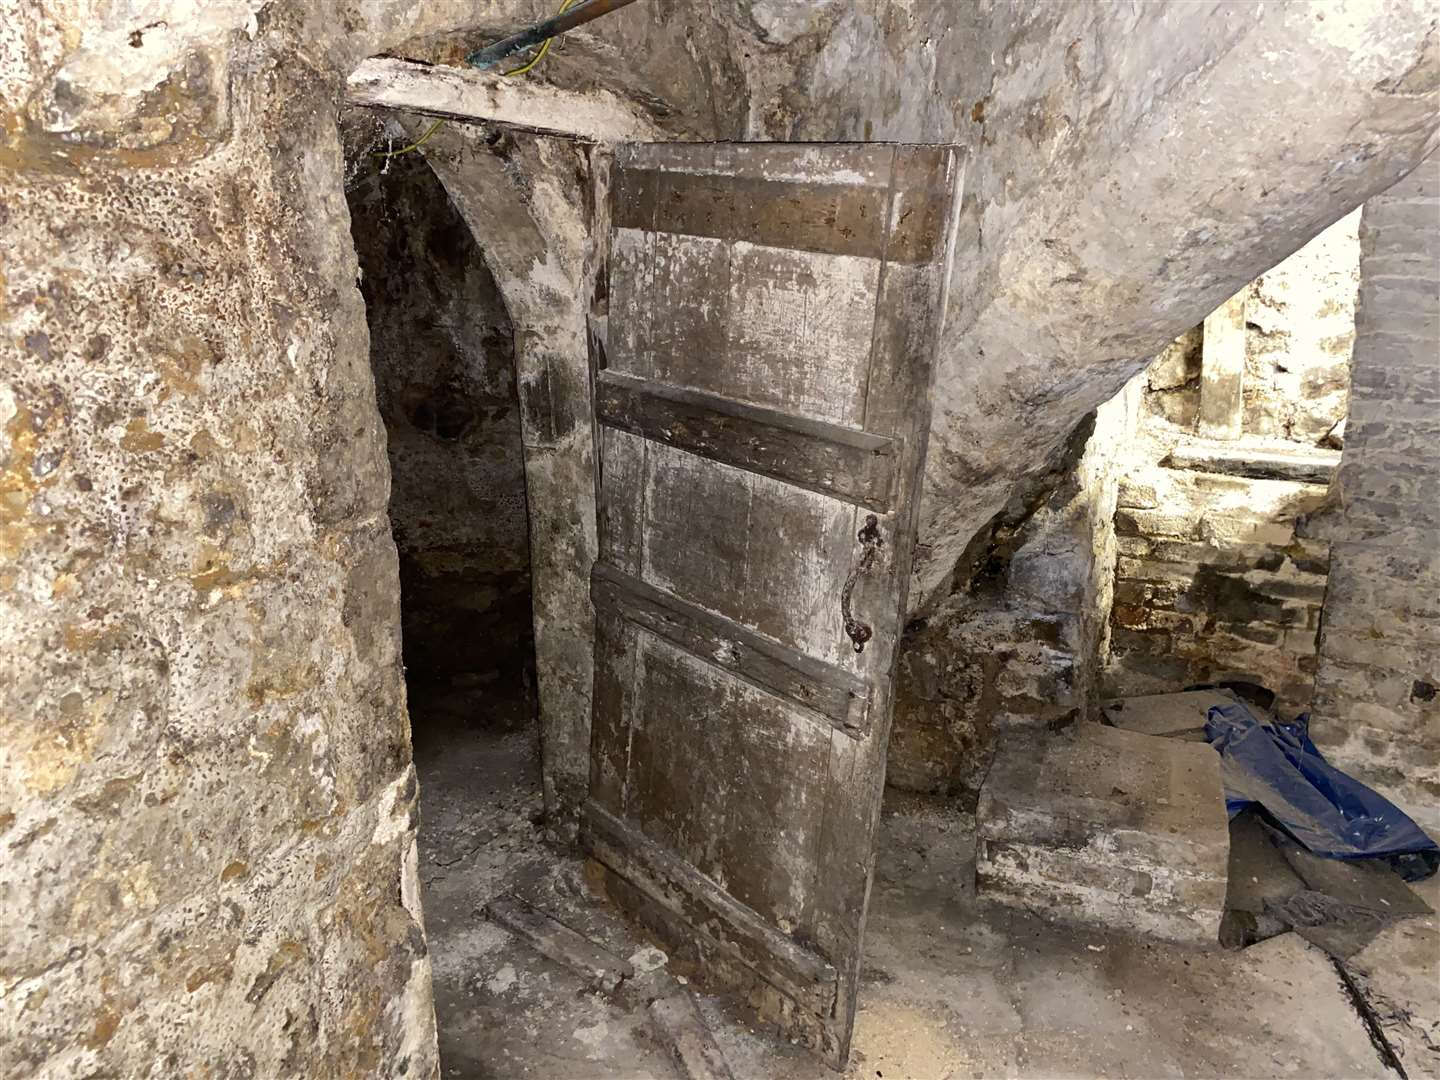 An ancient-looking door hangs in the crypt